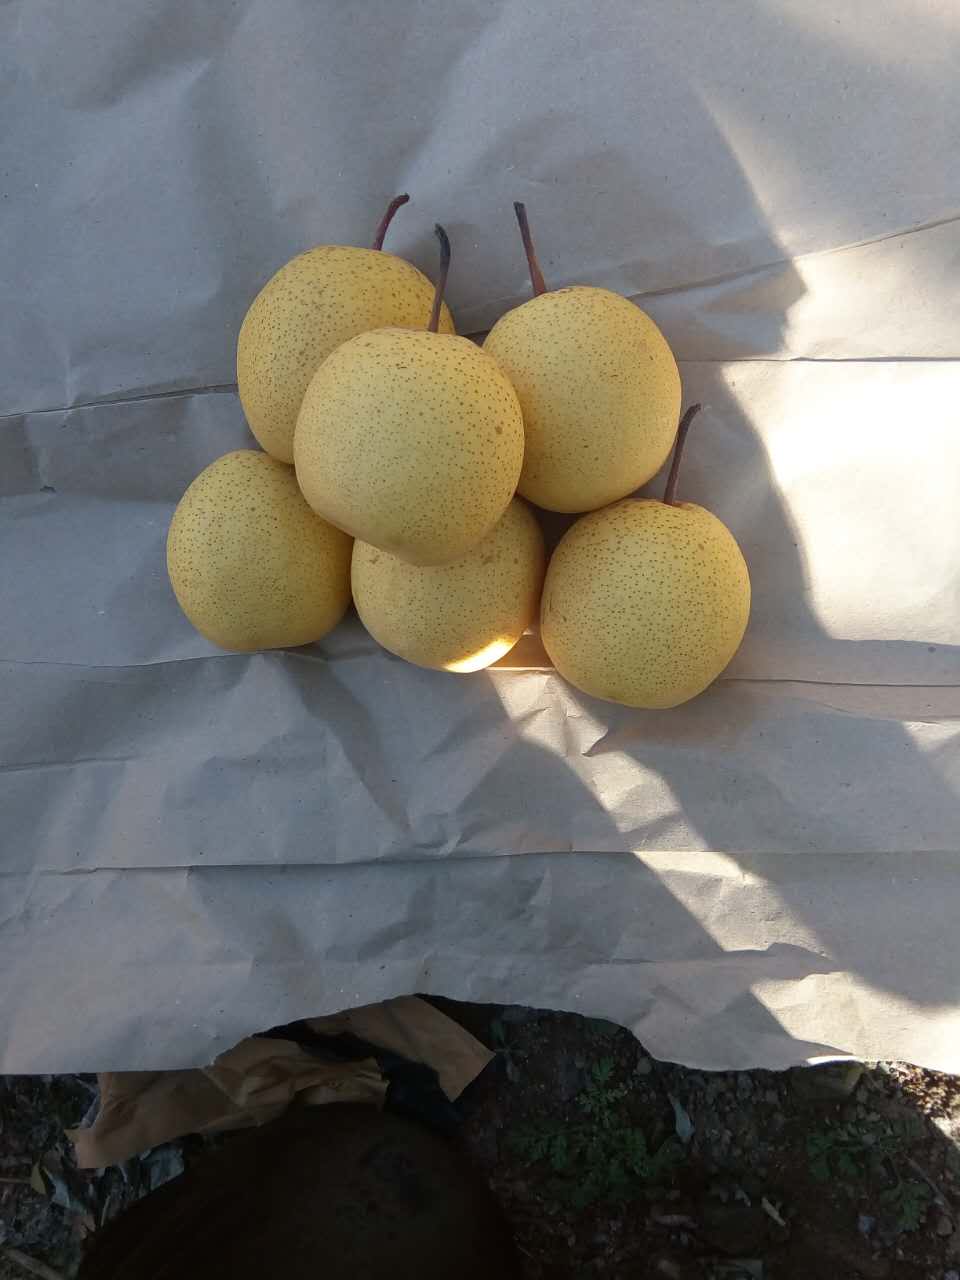 媛中梨的品种